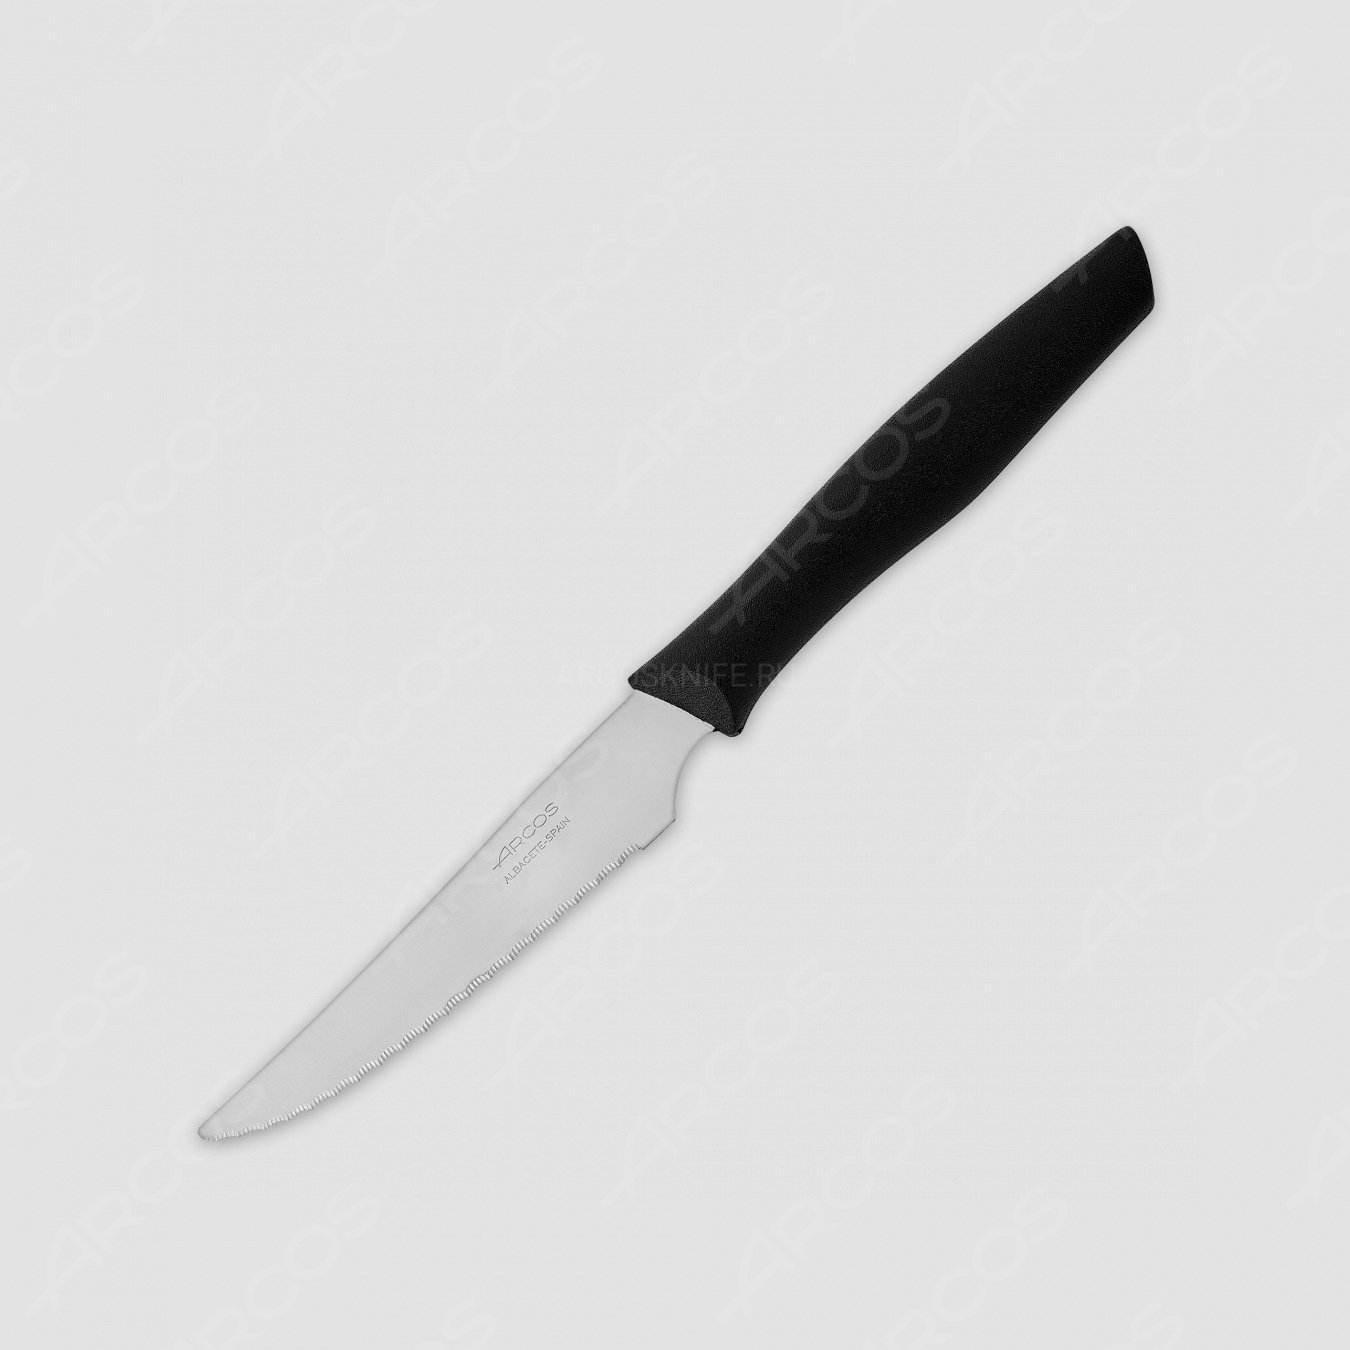 Нож кухонный для стейка 11 см, рукоять черная, серия Nova, ARCOS, Испания